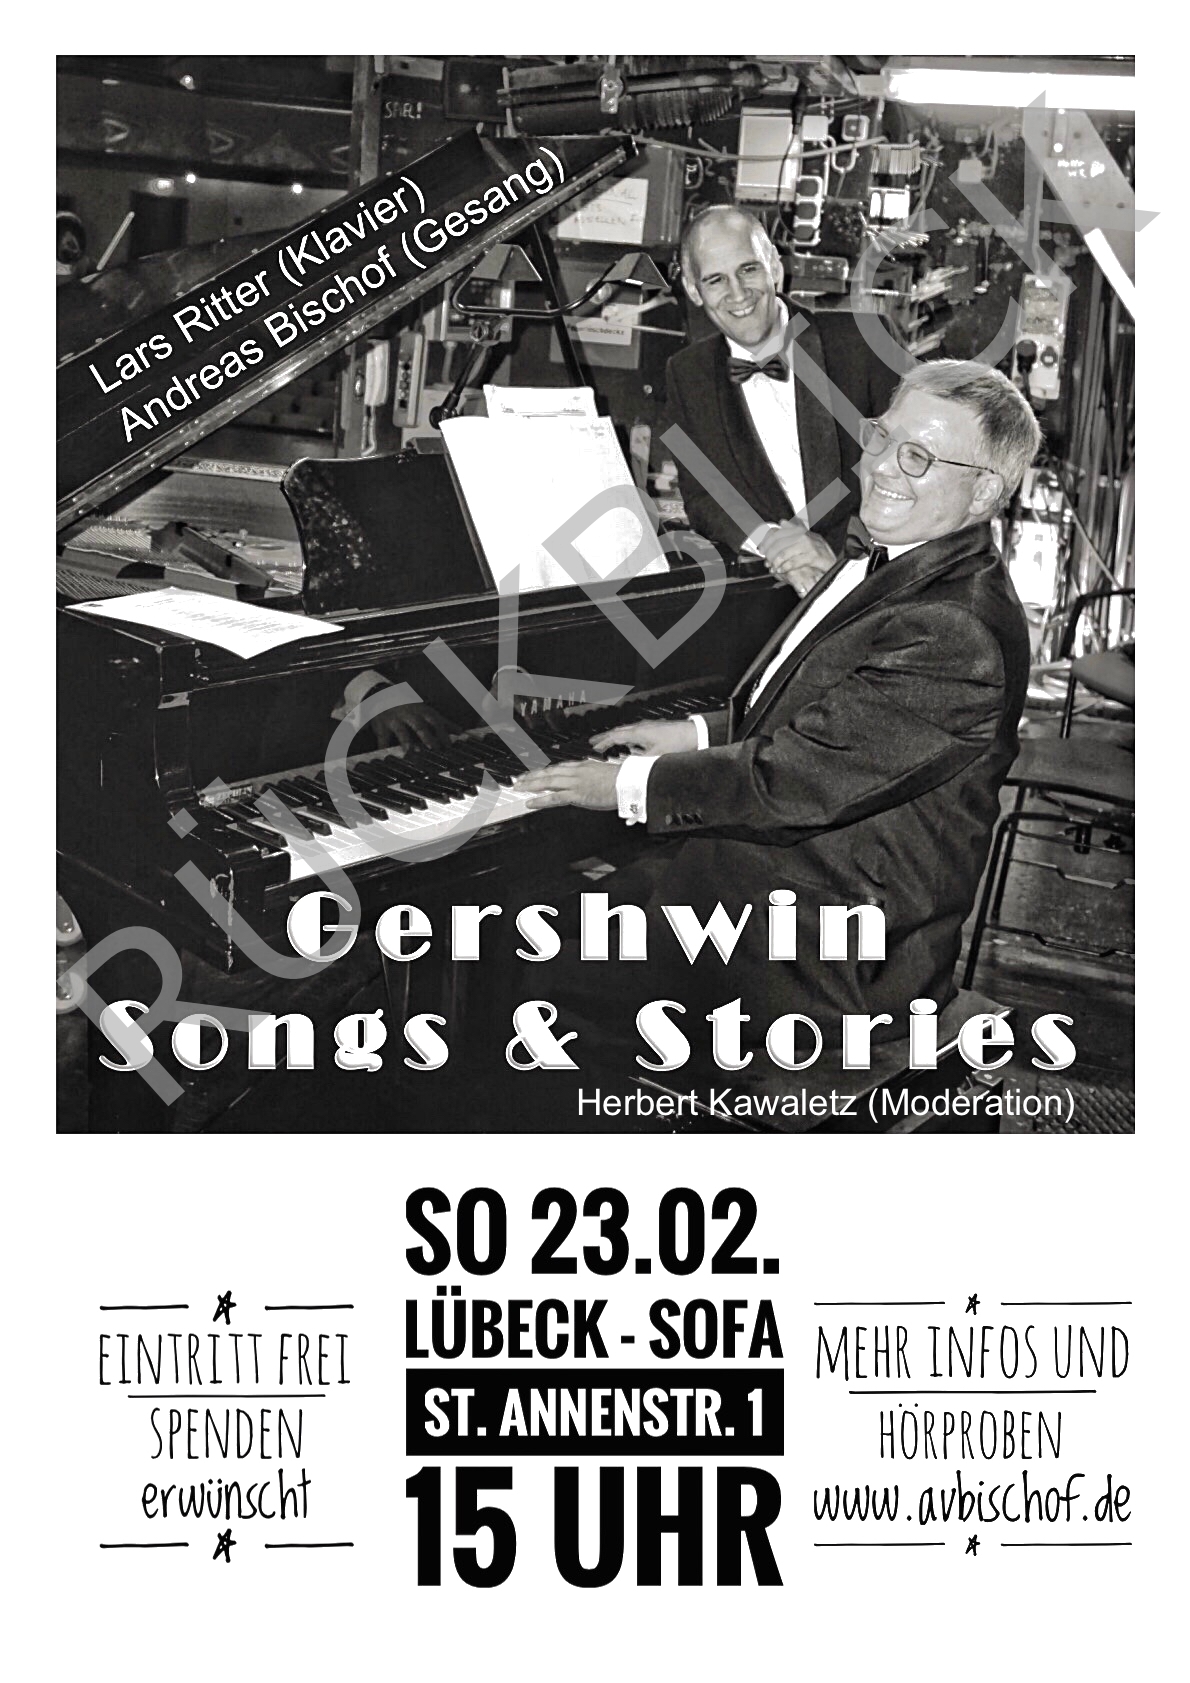 Gershwin Songs & Stories